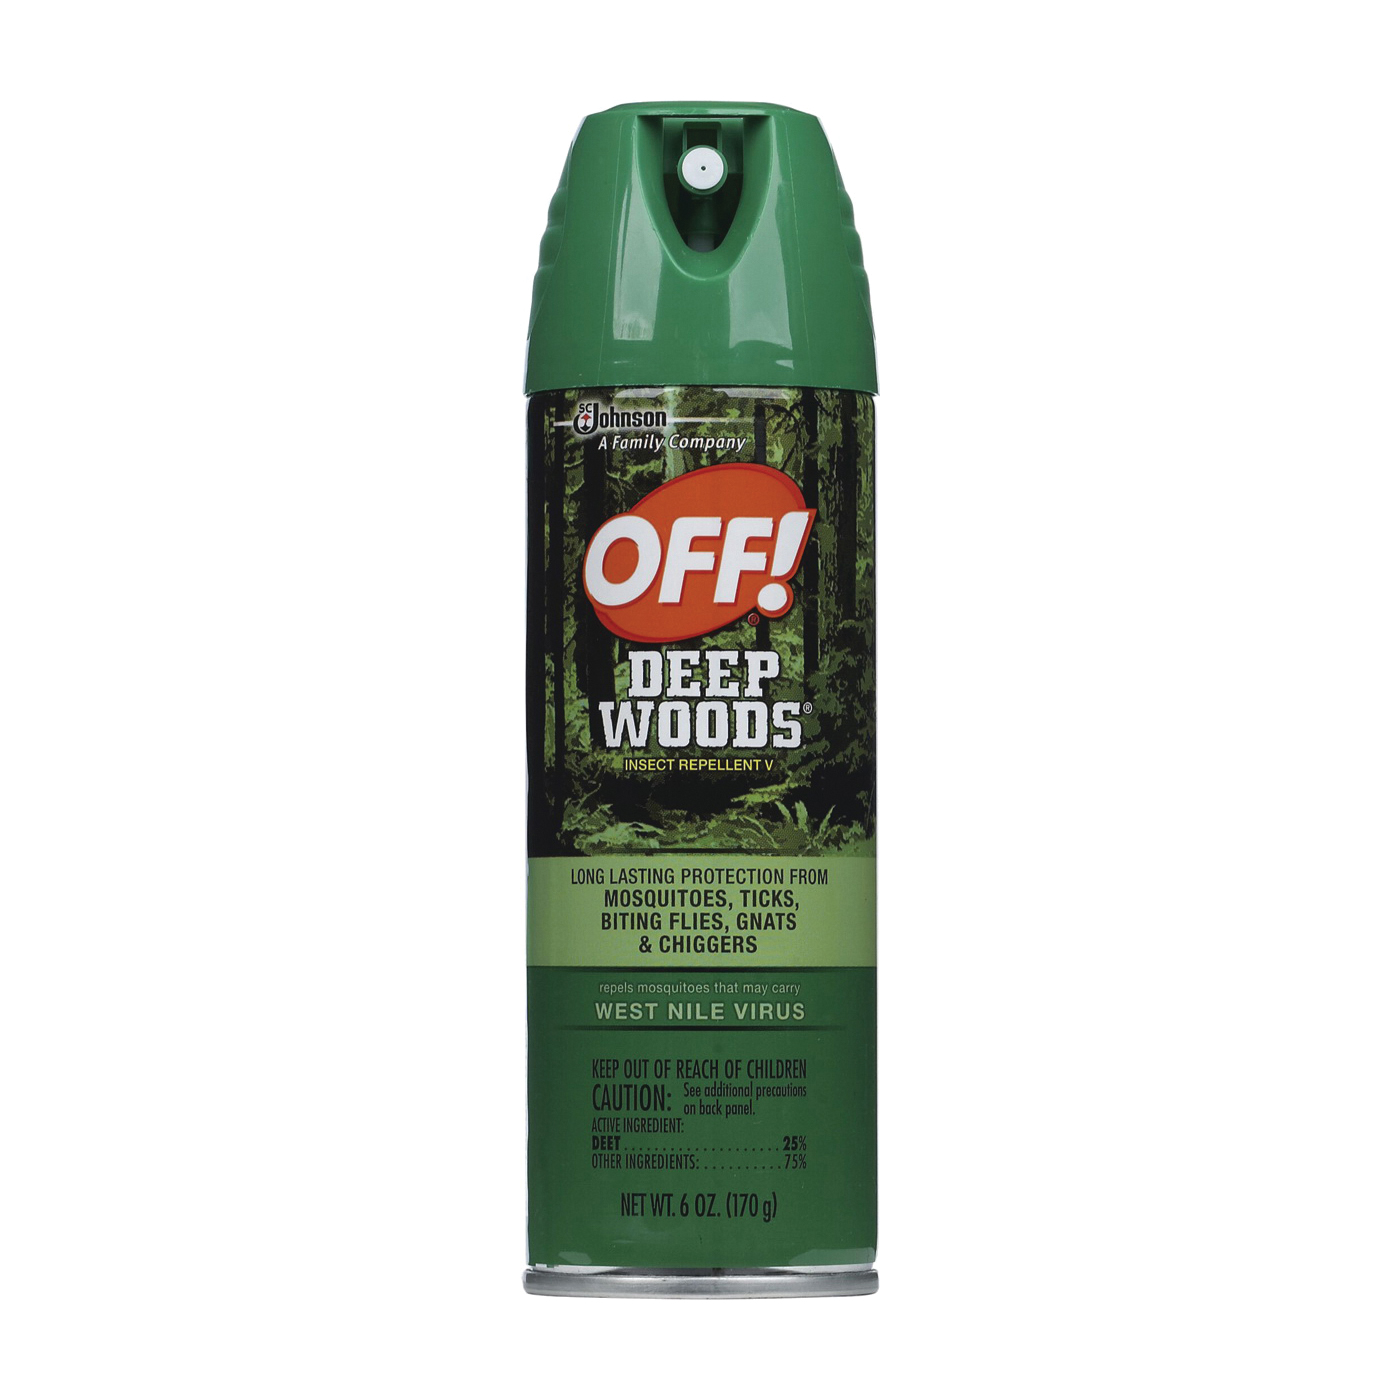 Deep Woods 01842 Insect Repellent V, 6 oz, Liquid, Clear, Alcohol